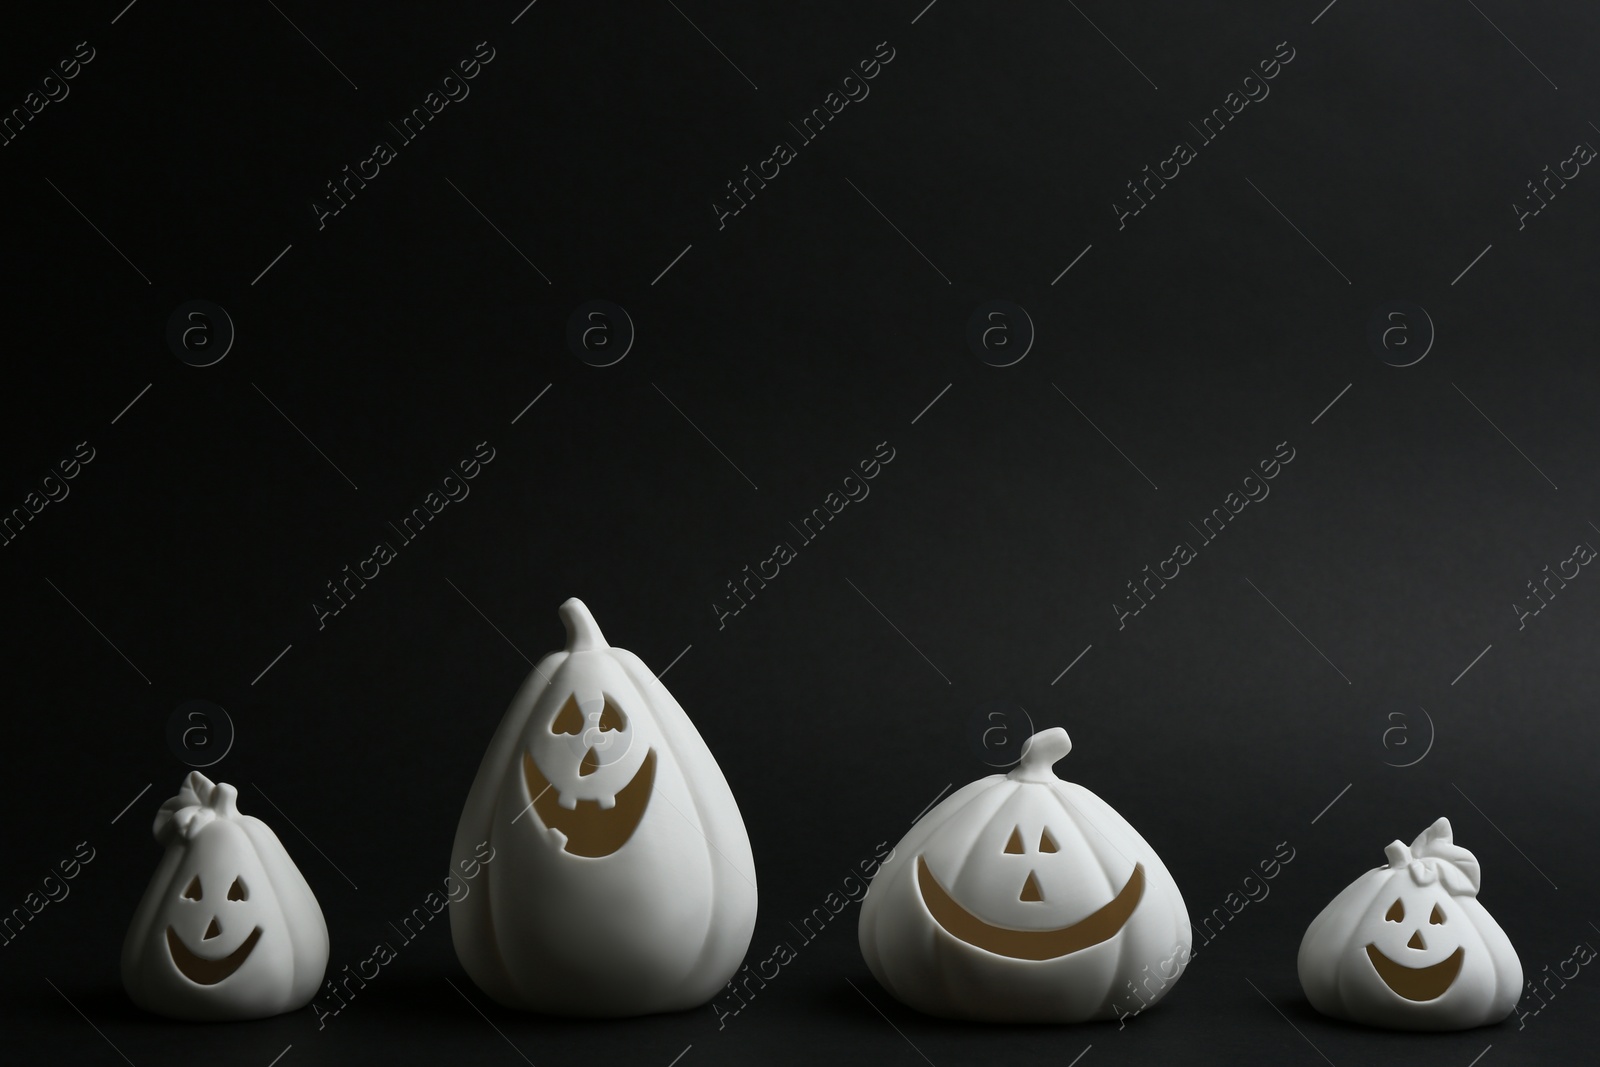 Photo of Jack-o-Lantern candle holders on black background. Halloween decor